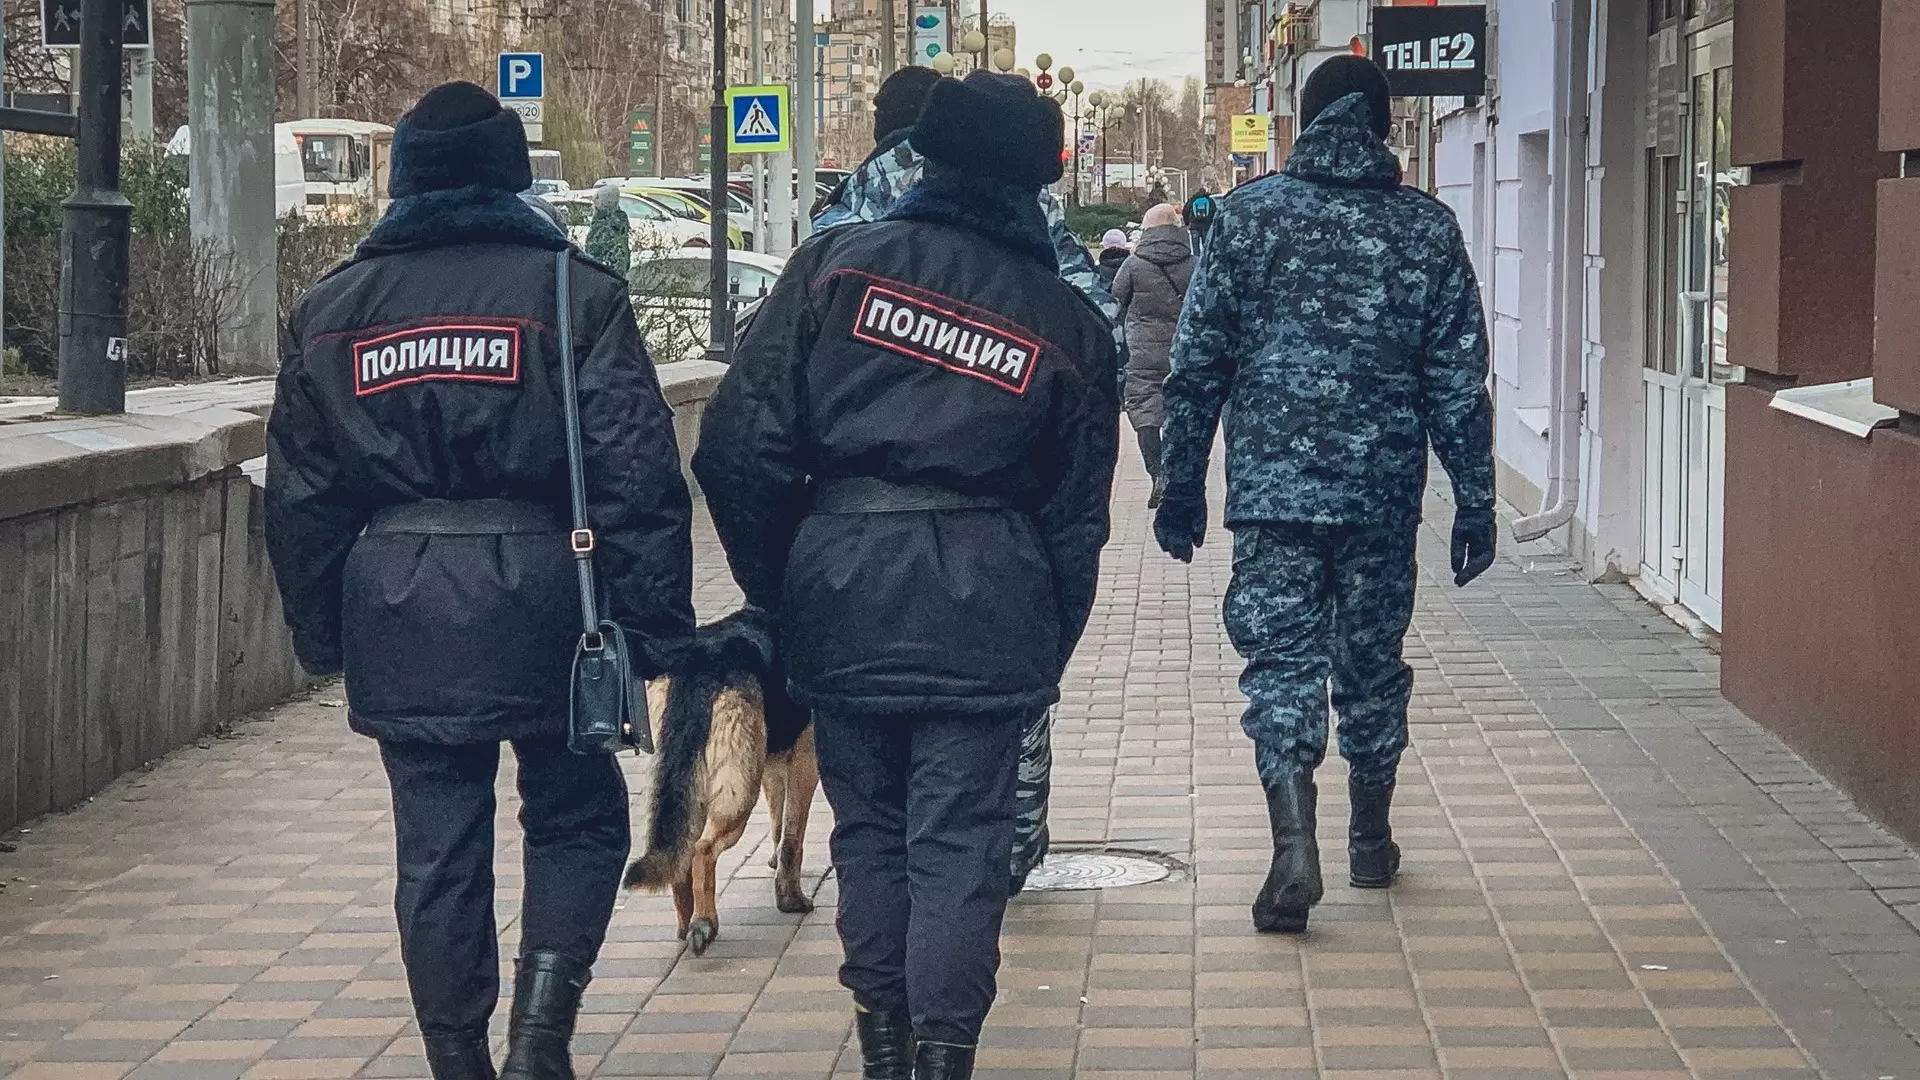 МВД выбрало компанию, которая построит отдел полиции в Перми за 665 млн рублей